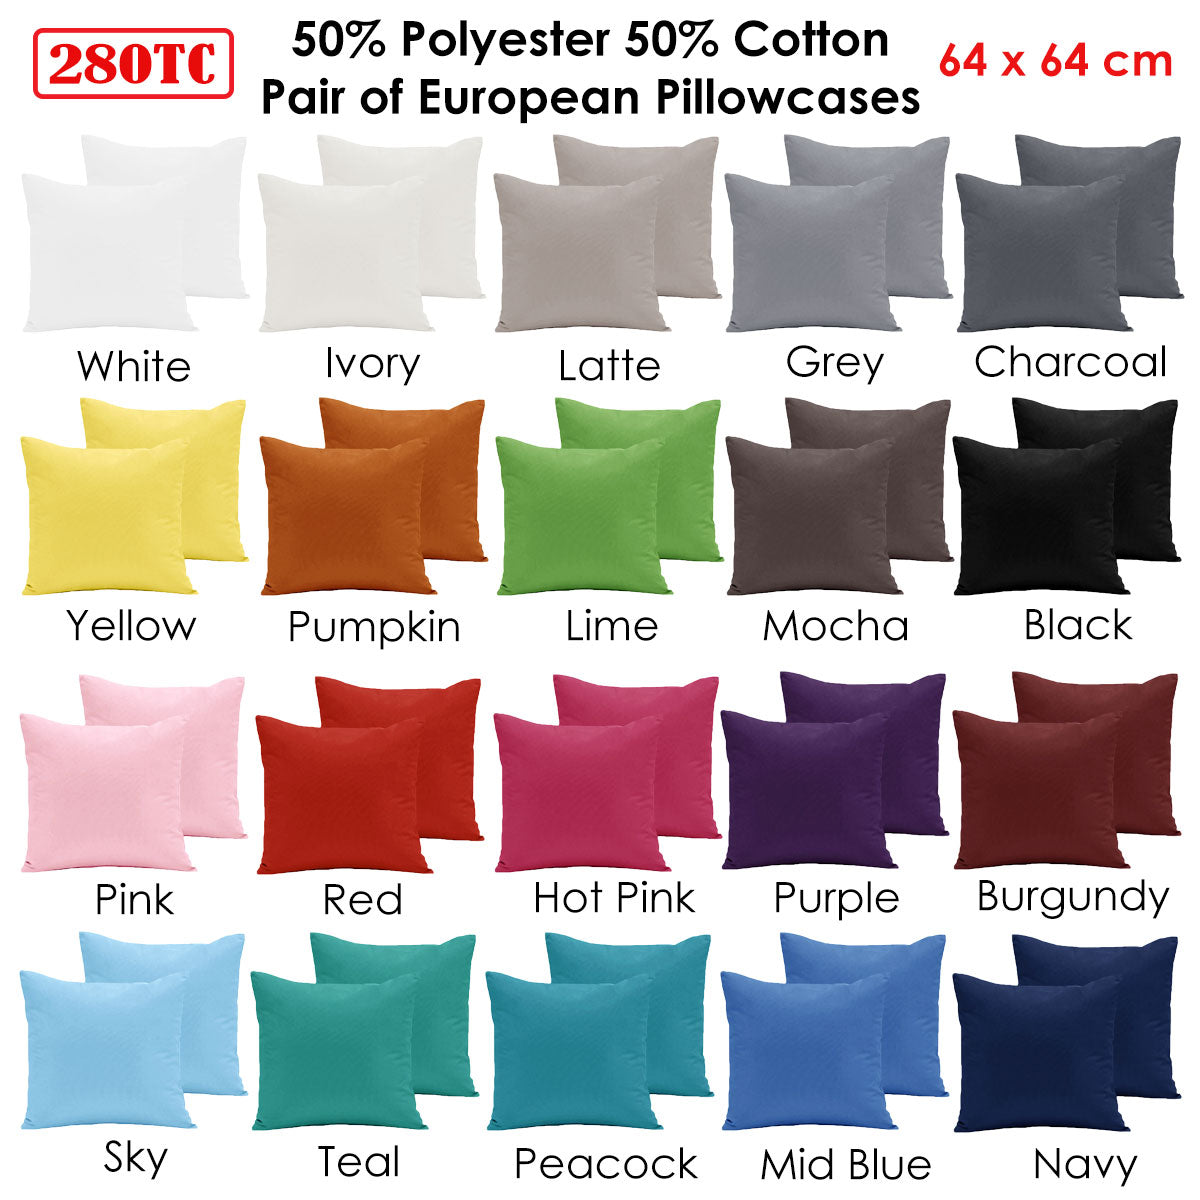 Pair of  280TC Polyester Cotton European Pillowcases Latte